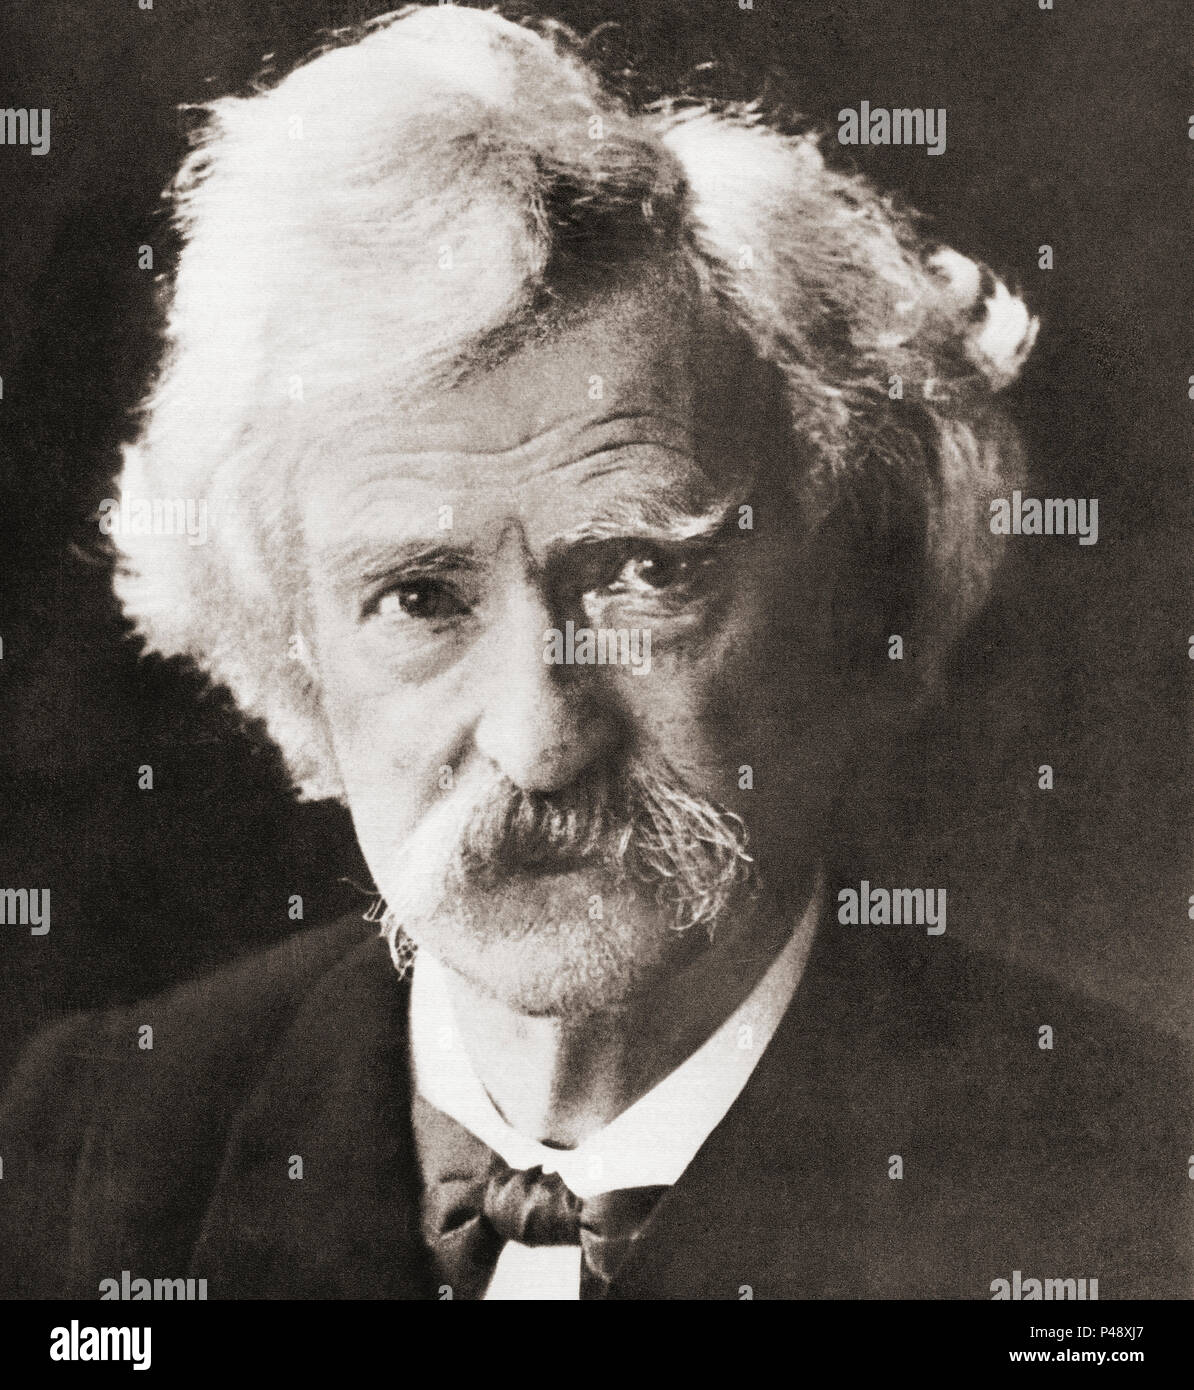 Destouches, 1835 -1910, mieux connu sous son nom de plume de Mark Twain. L'écrivain américain, humoriste, entrepreneur, éditeur et conférencier. Après une impression contemporaine. Banque D'Images